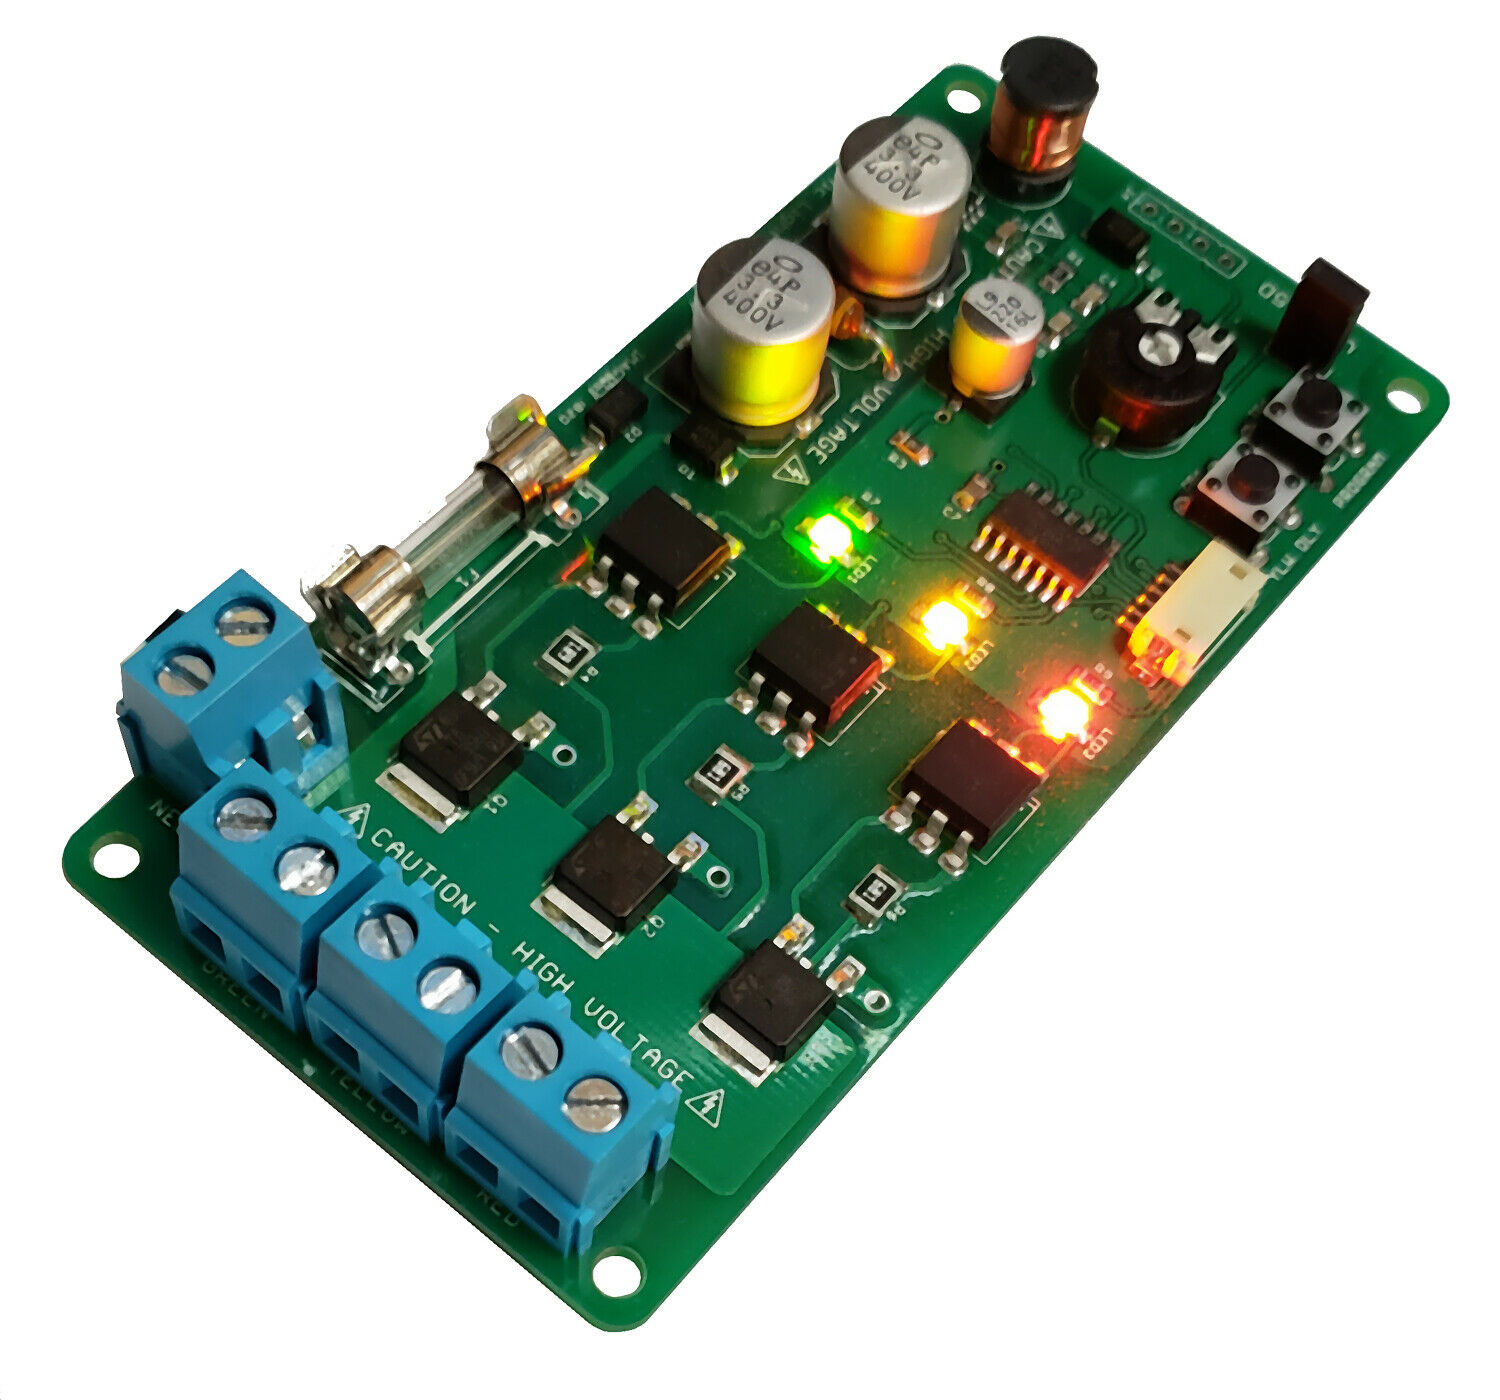 Traffic Light Controller / Sequencer "noiseless" 85v-265v / 650w Per Channel